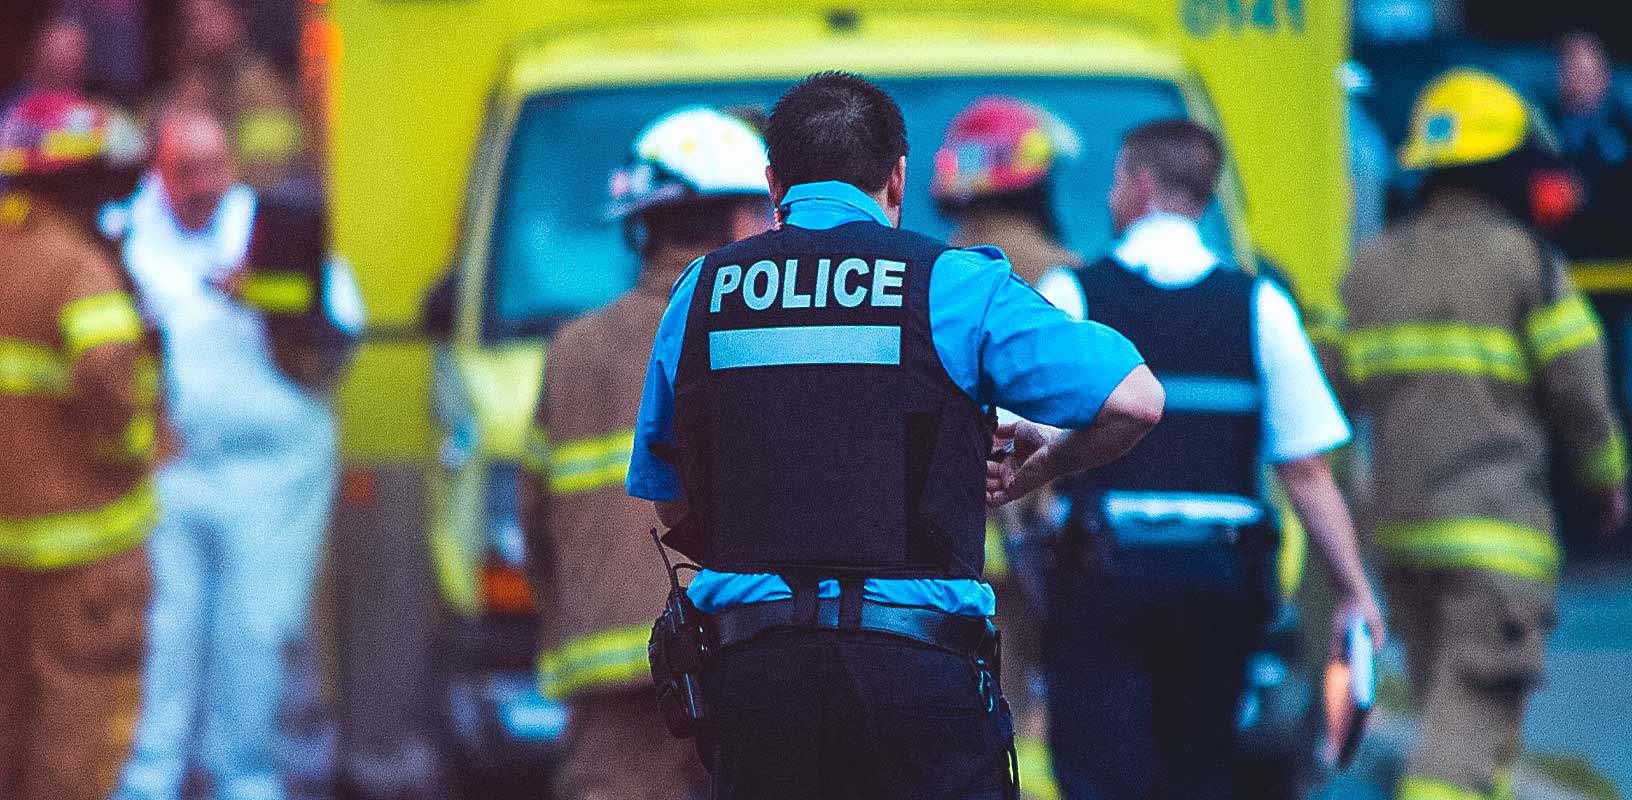 Bild der Polizei mit Einsatzfahrzeug